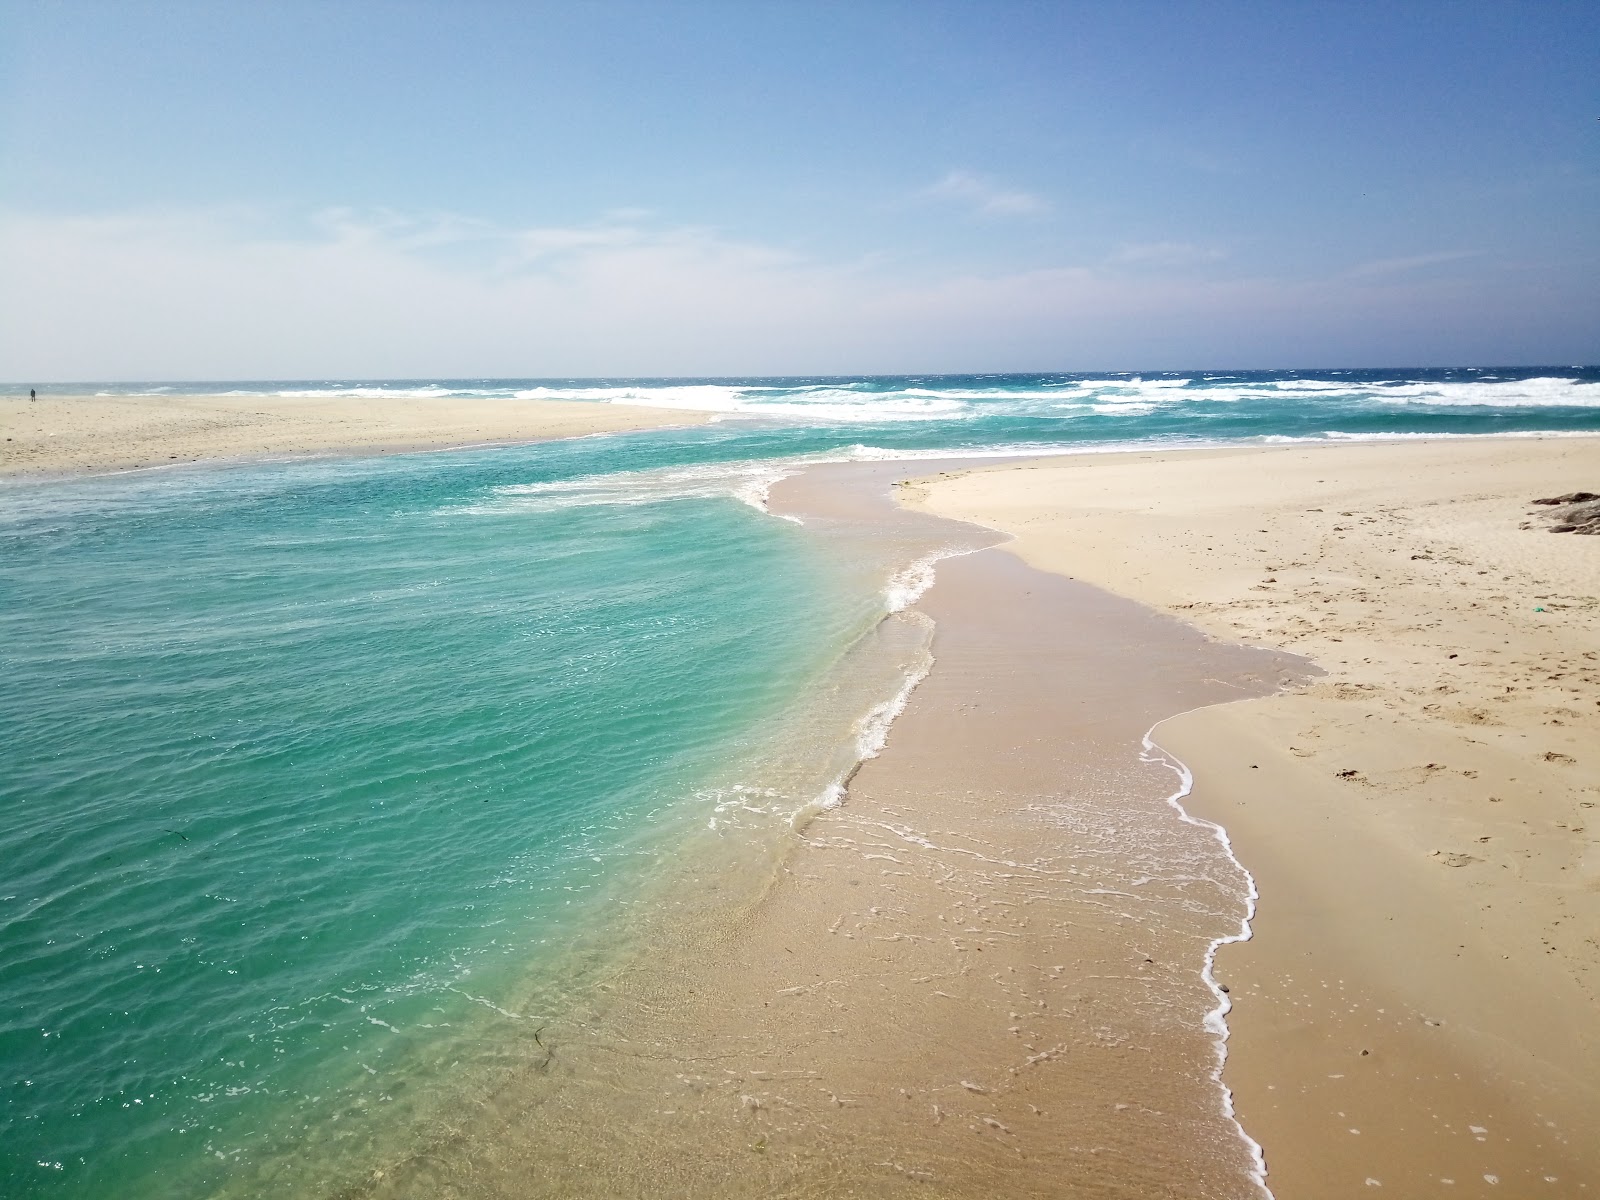 Praia de Baldaio II'in fotoğrafı geniş plaj ile birlikte